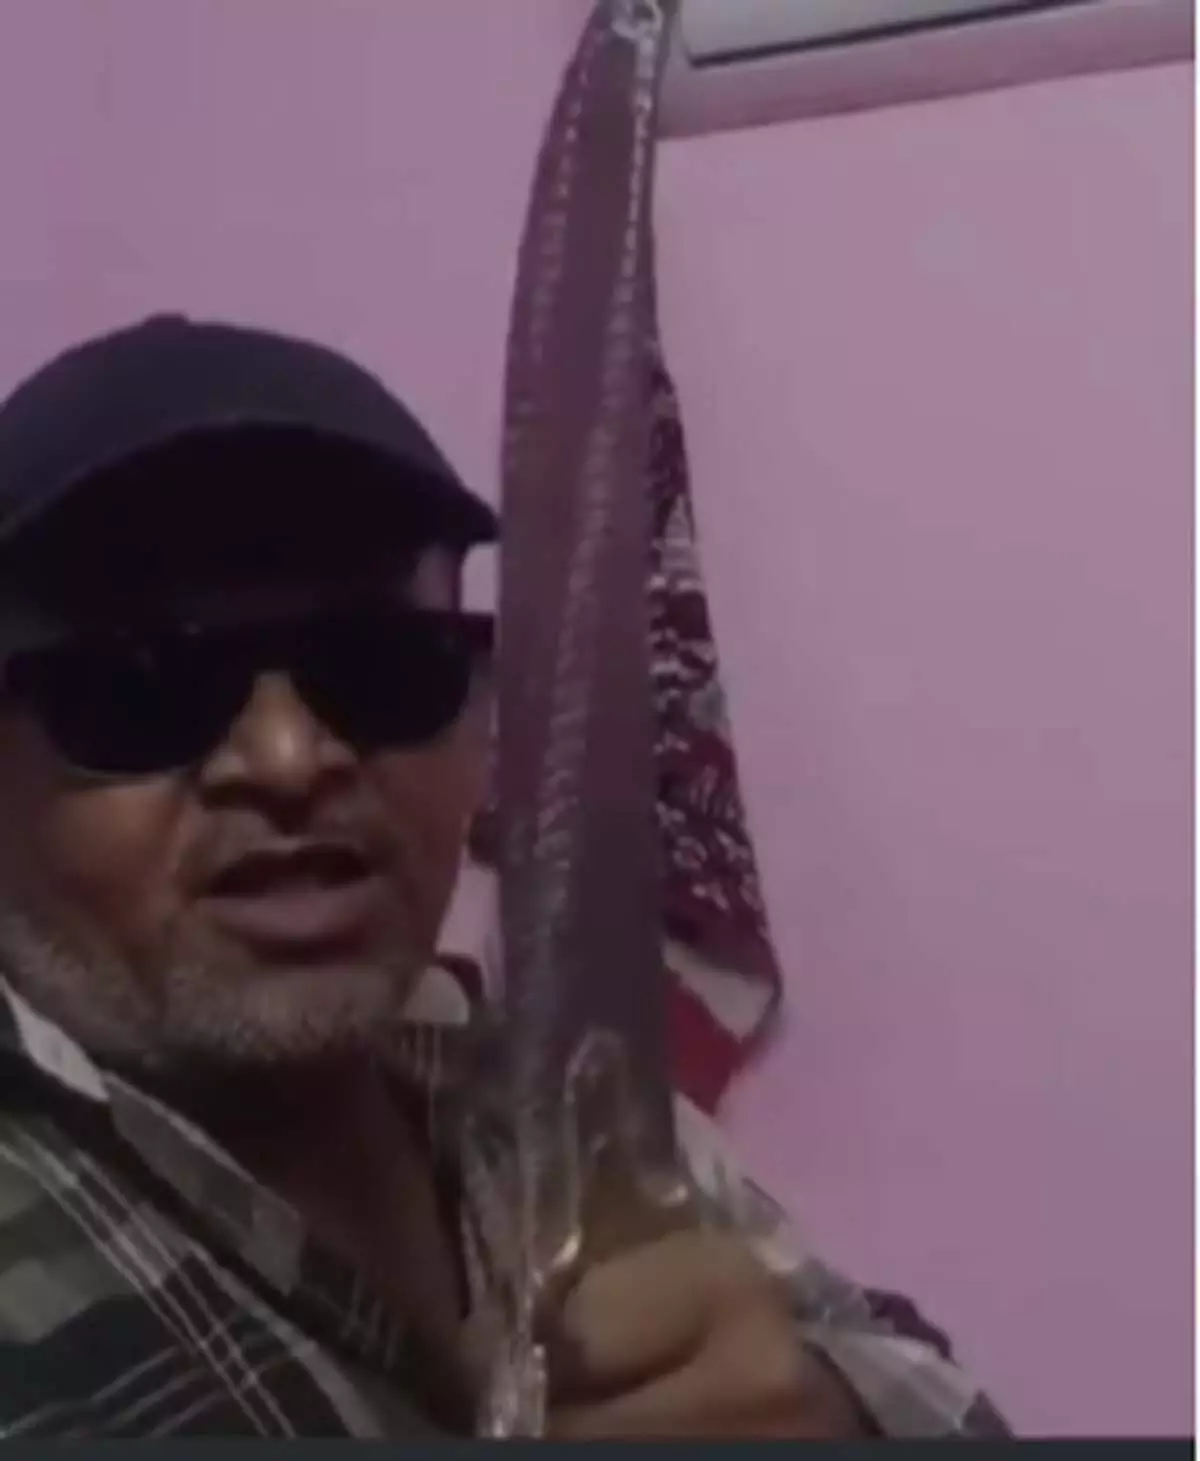 हाथ में तलवार...वीडियो बनाकर दी पीएम मोदी को जान से मारने की धमकी, पुलिस ने दर्ज की FIR